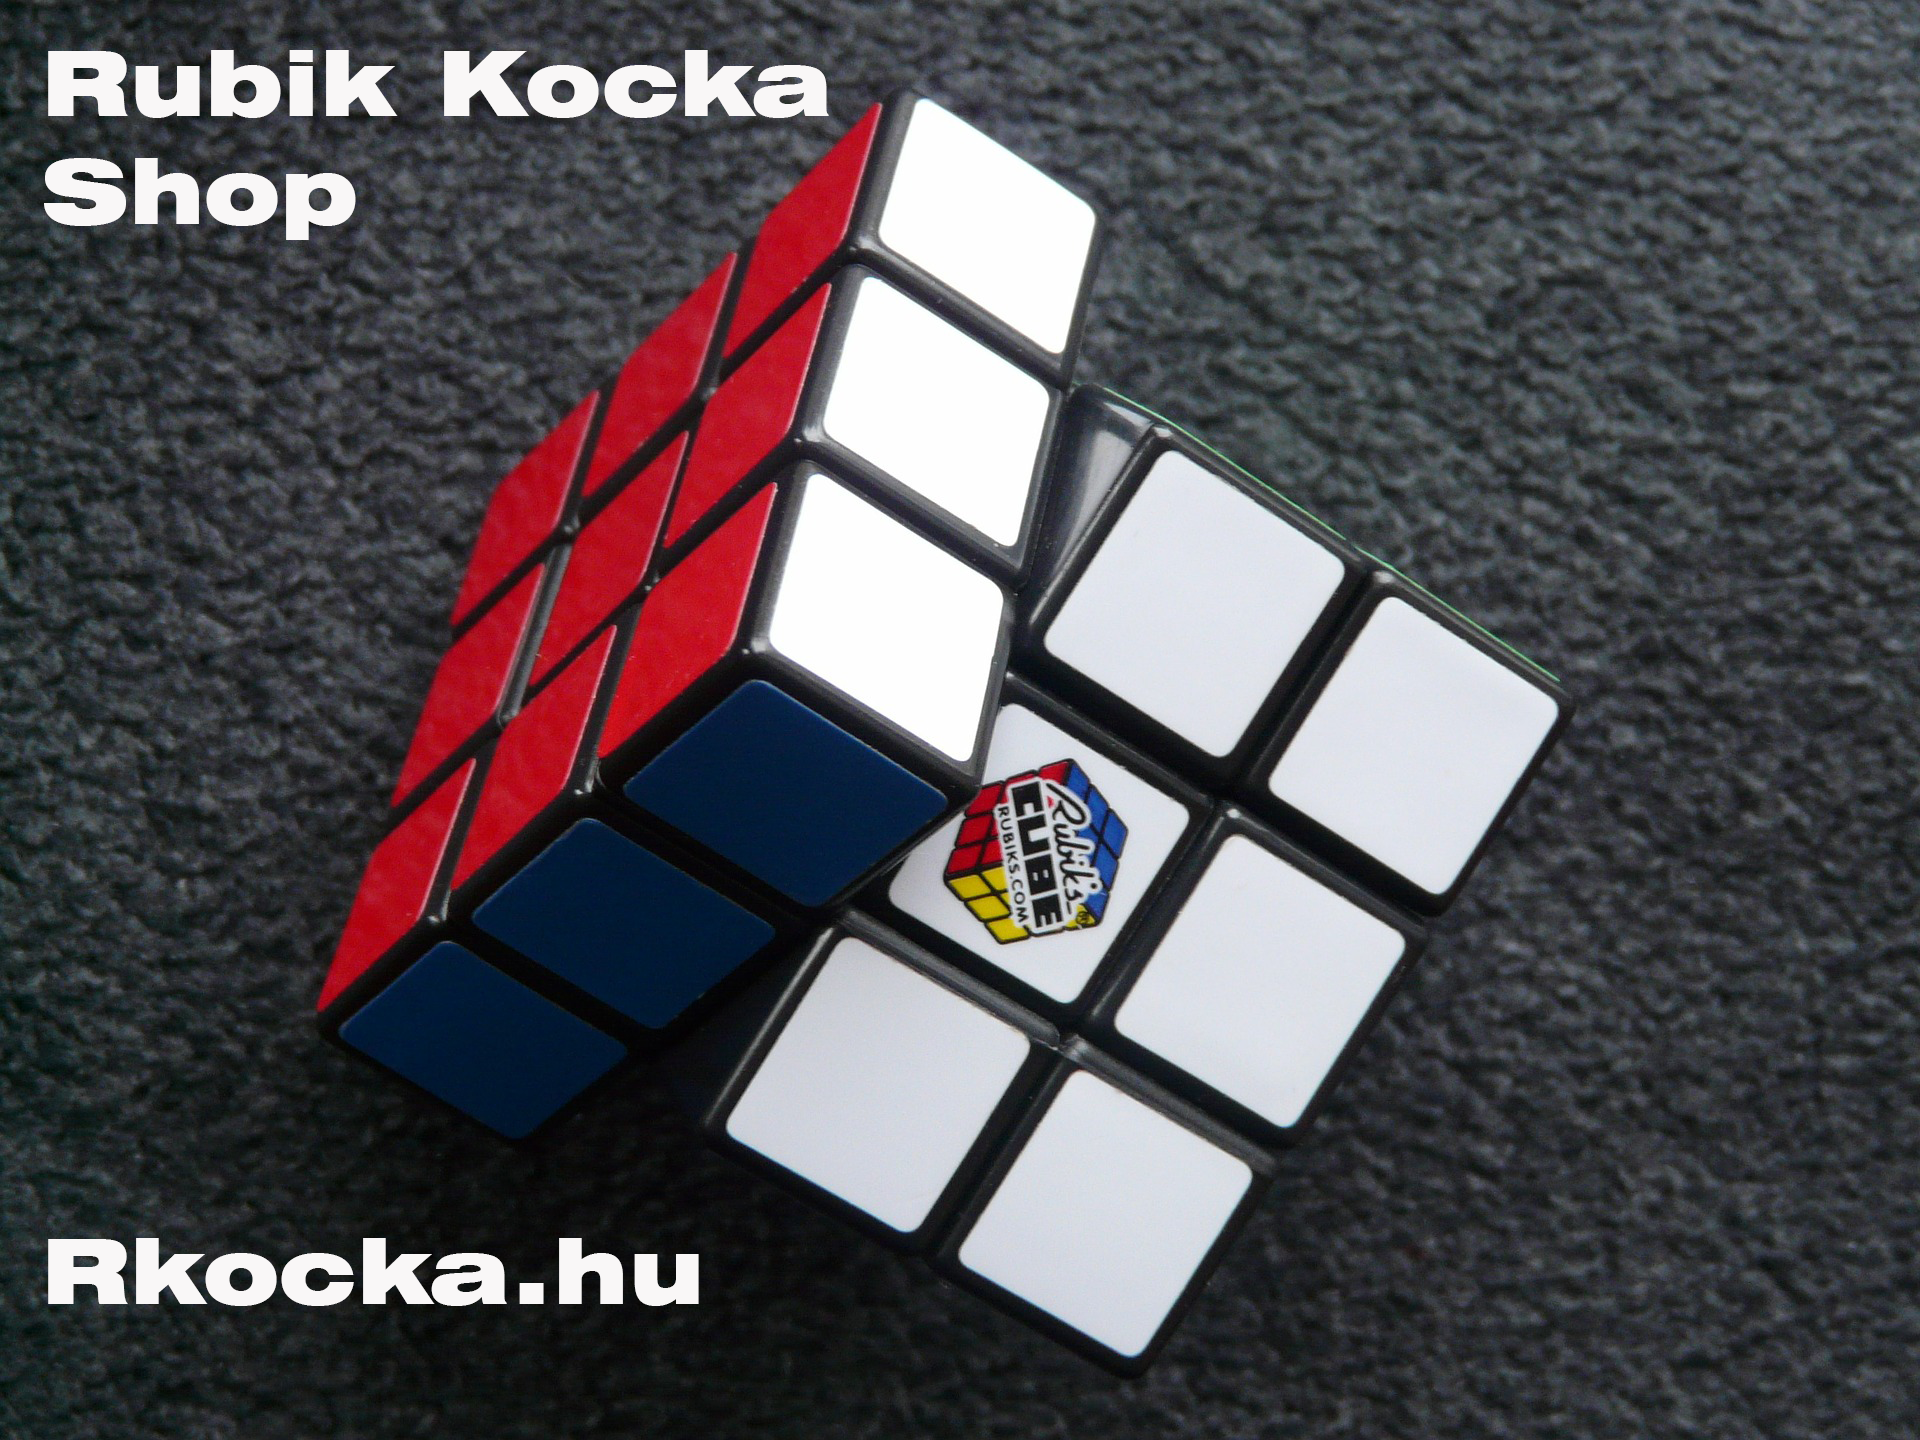 Rubik Kocka Shop